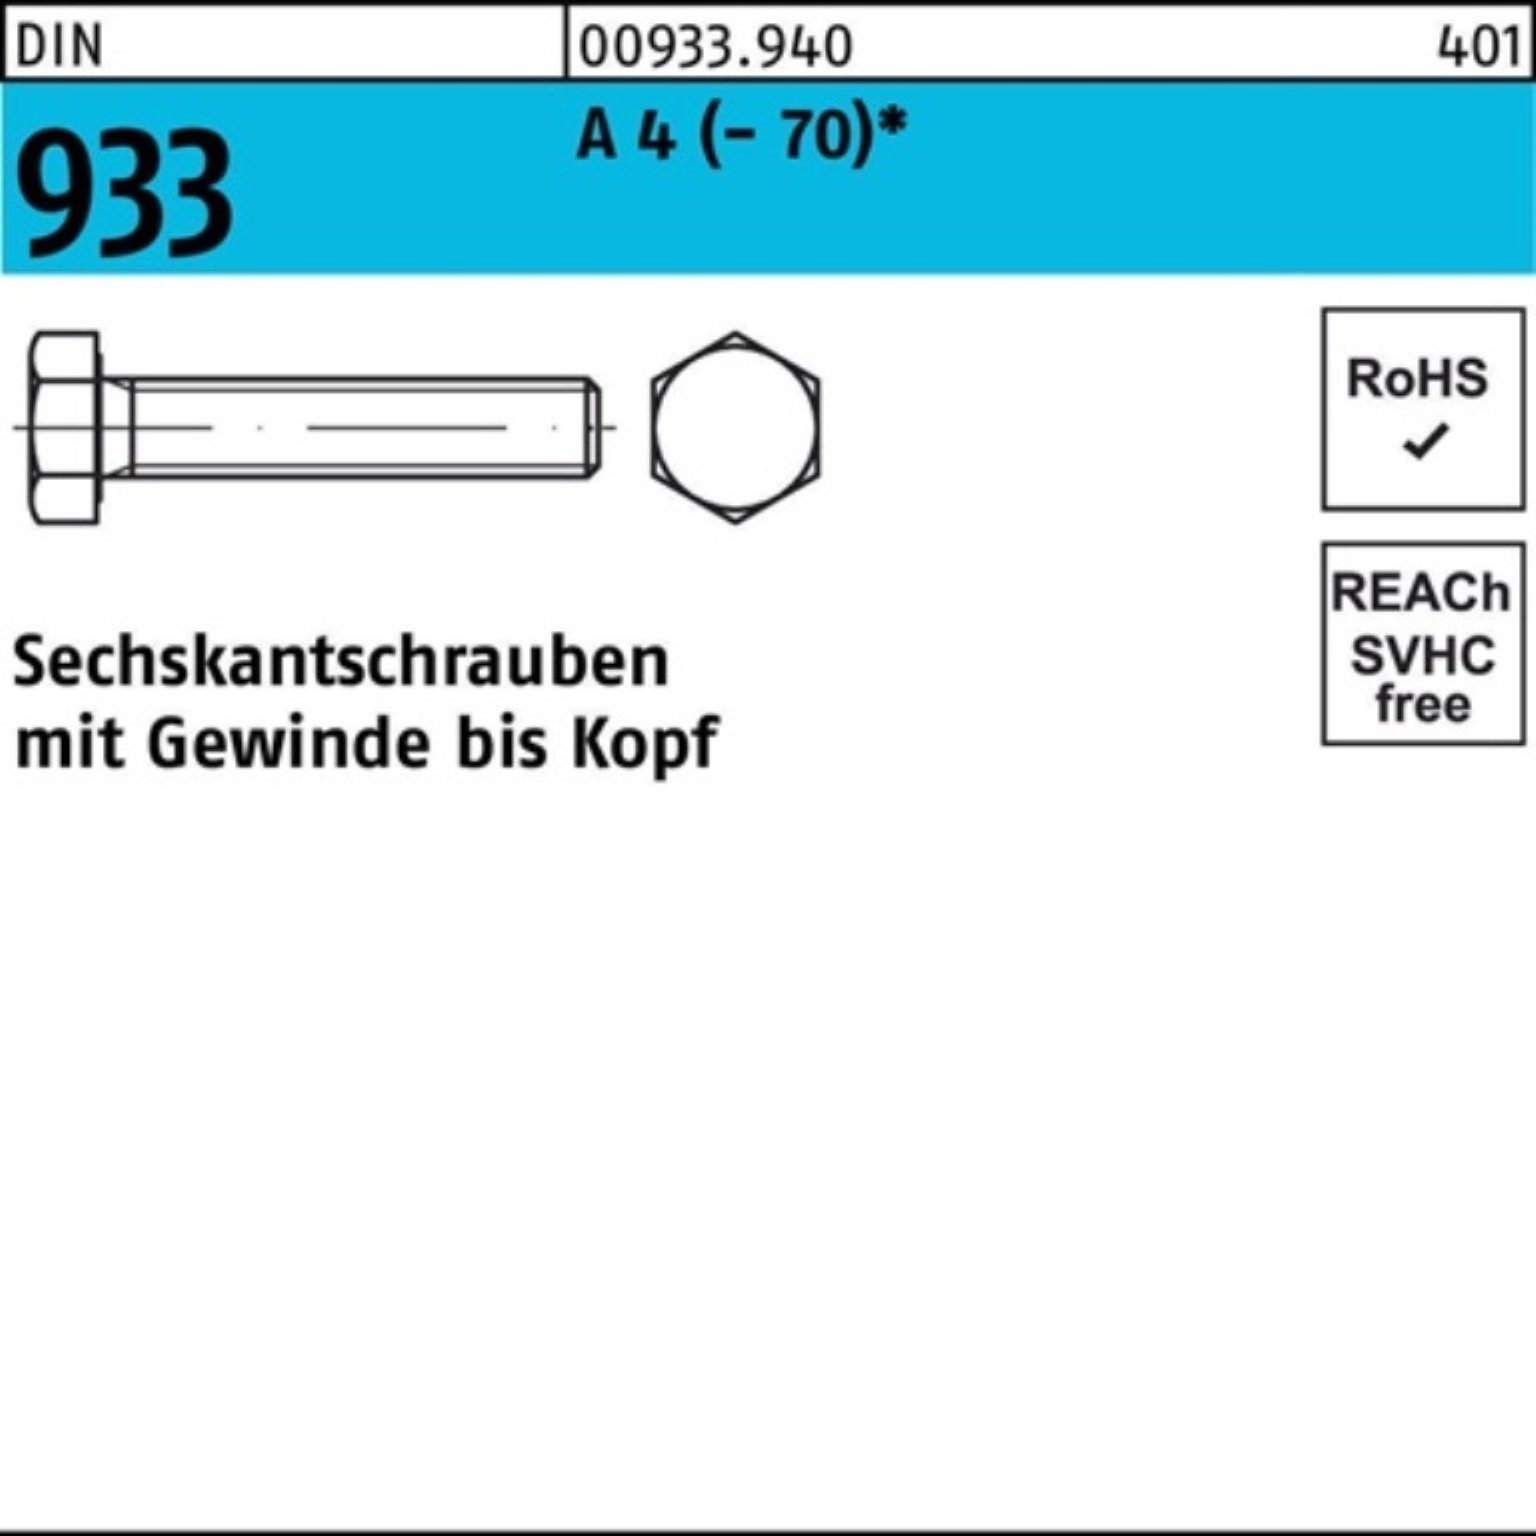 A DIN 4 DI Stück 933 (70) Reyher Sechskantschraube VG Sechskantschraube 100er M27x 1 80 Pack